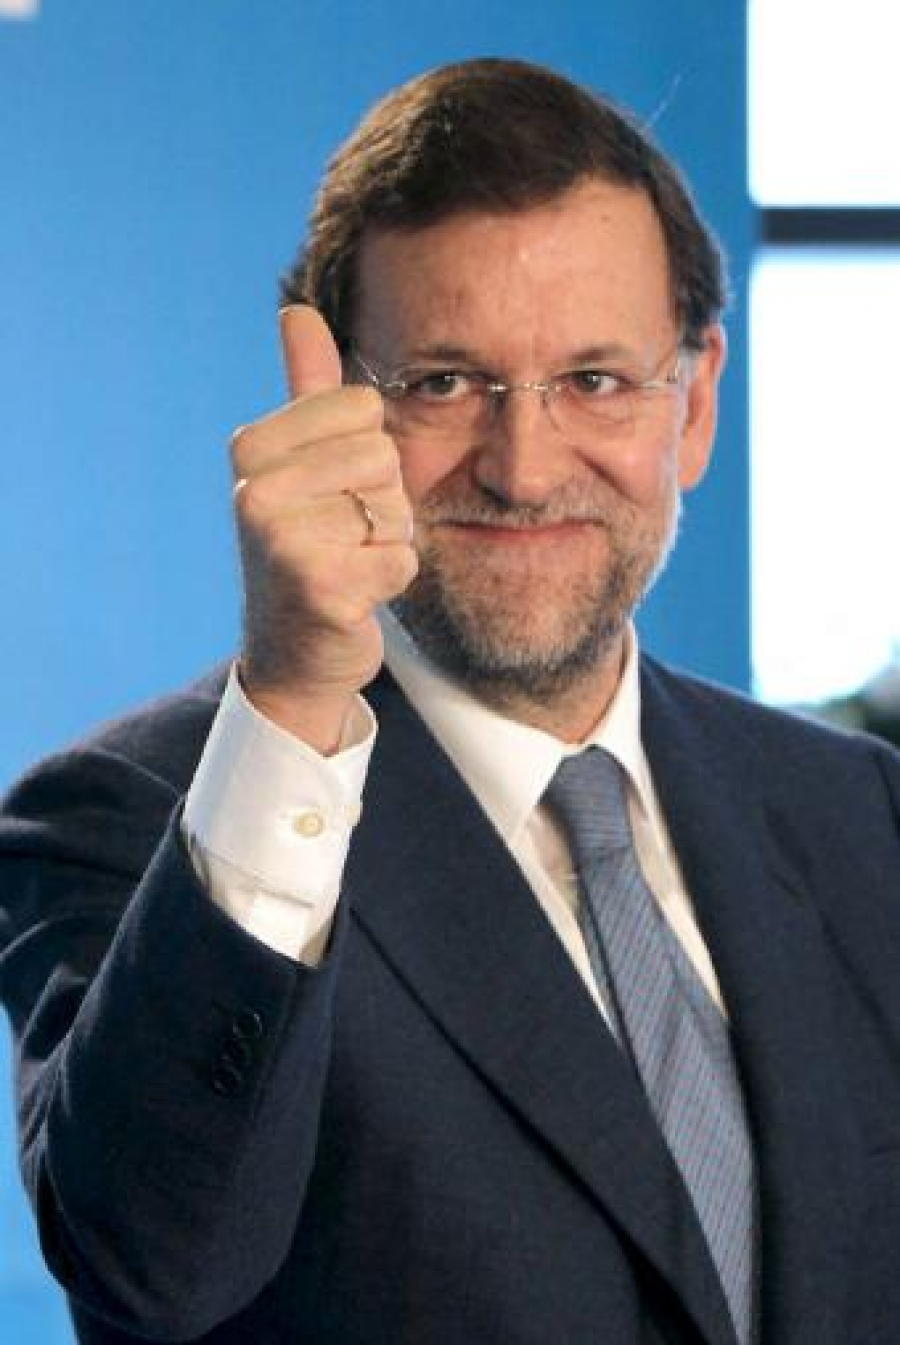 ¡Rajoy incrementará la subida de luz hasta el 2020!